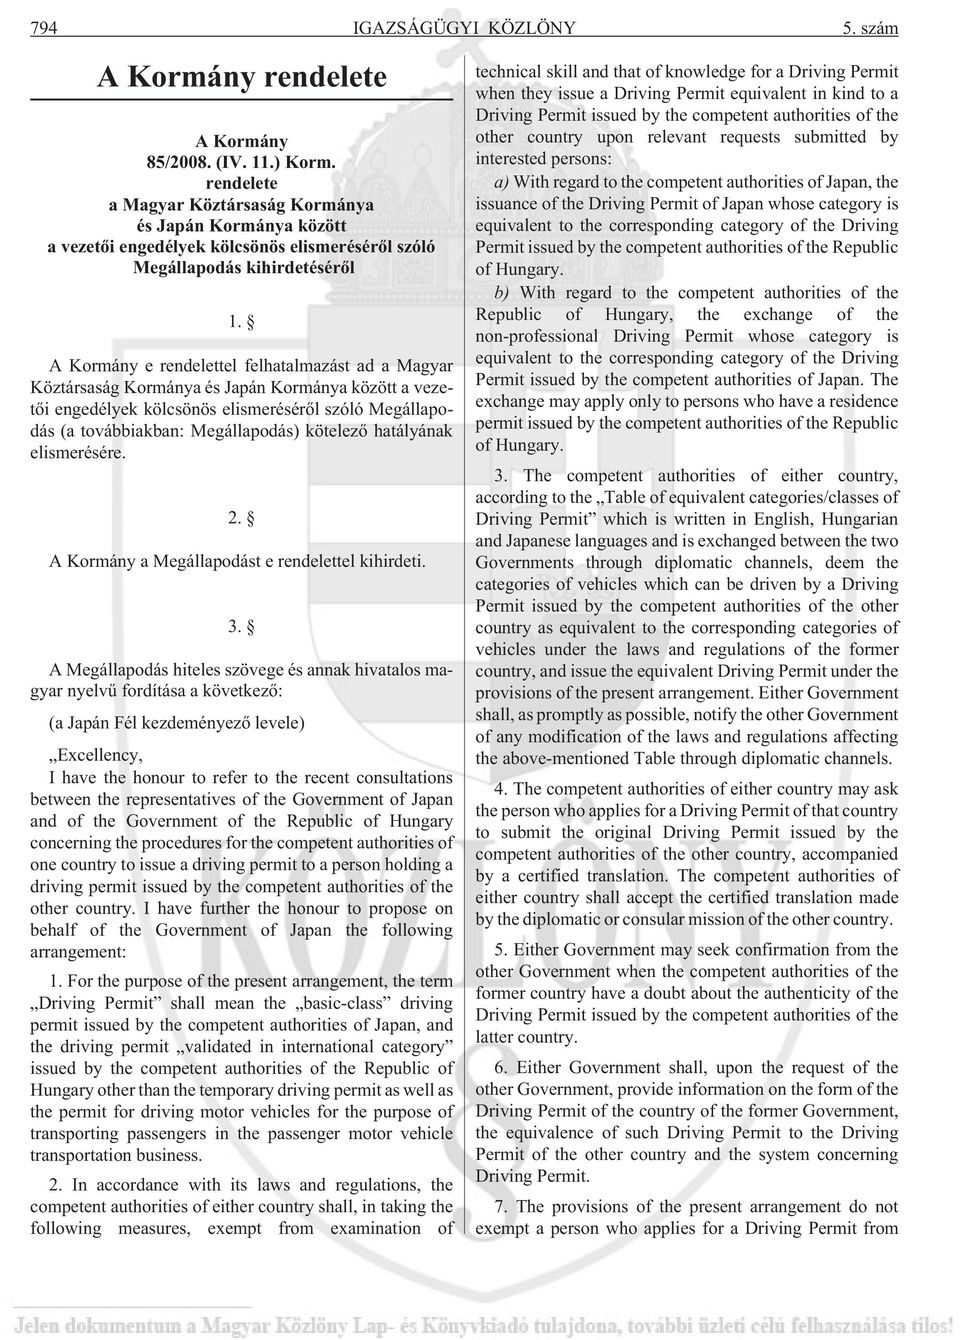 A Kormány e rendelettel felhatalmazást ad a Magyar Köztársaság Kormánya és Japán Kormánya között a vezetõi engedélyek kölcsönös elismerésérõl szóló Megállapodás (a továbbiakban: Megállapodás)